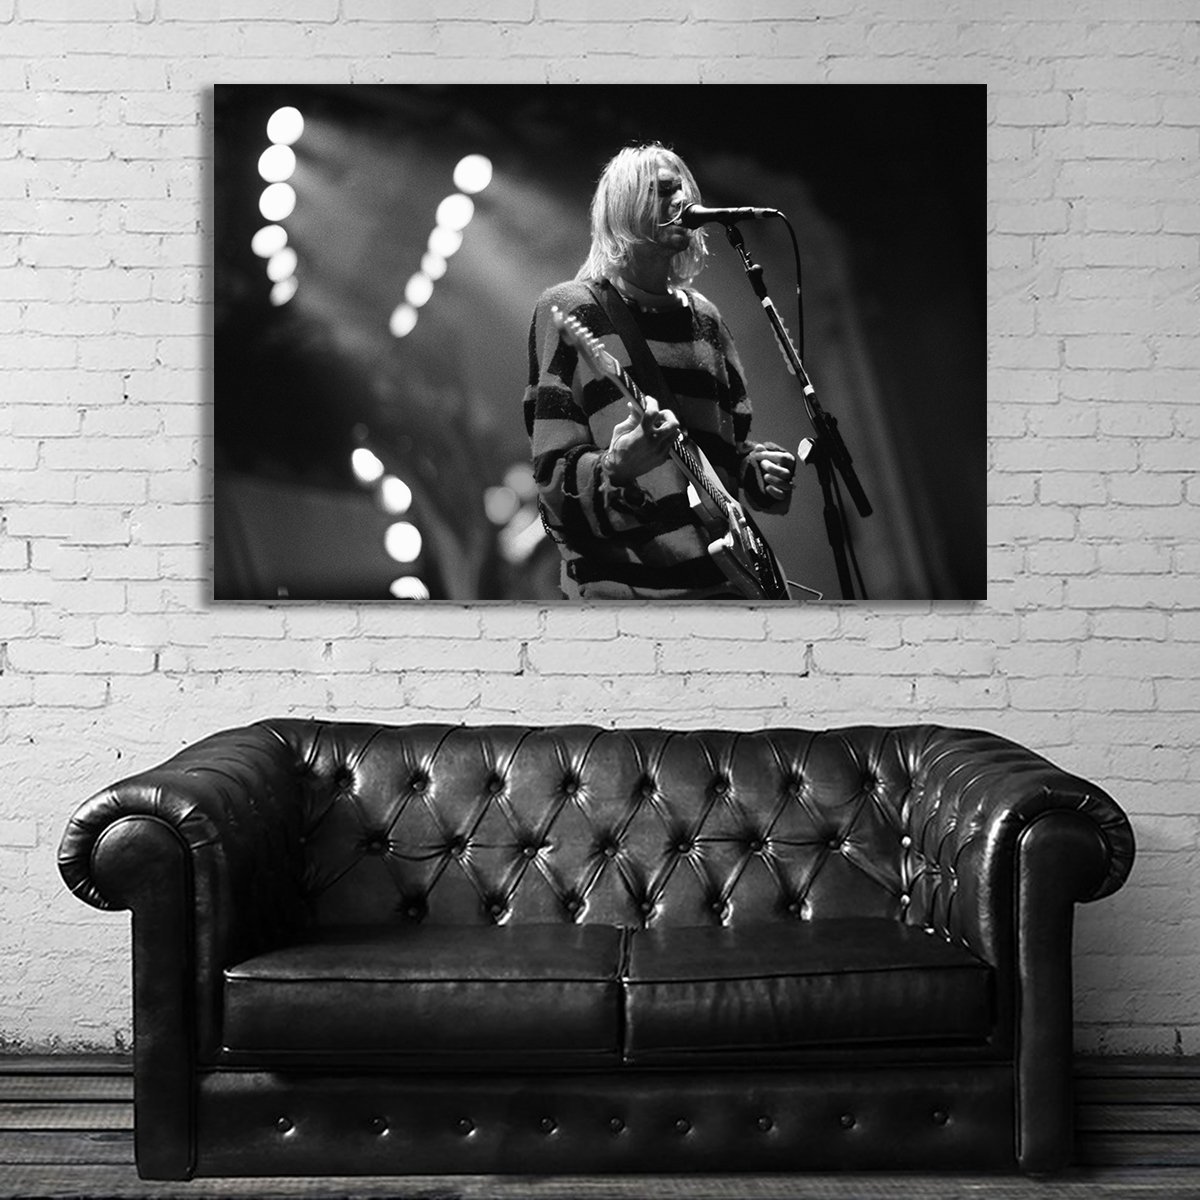 カート・コバーン ニルヴァーナ 特大 ポスター 150x100cm 海外 ロック アート インテリア グッズ 写真 雑貨 絵 ニルバーナ Kurt Cobain 3